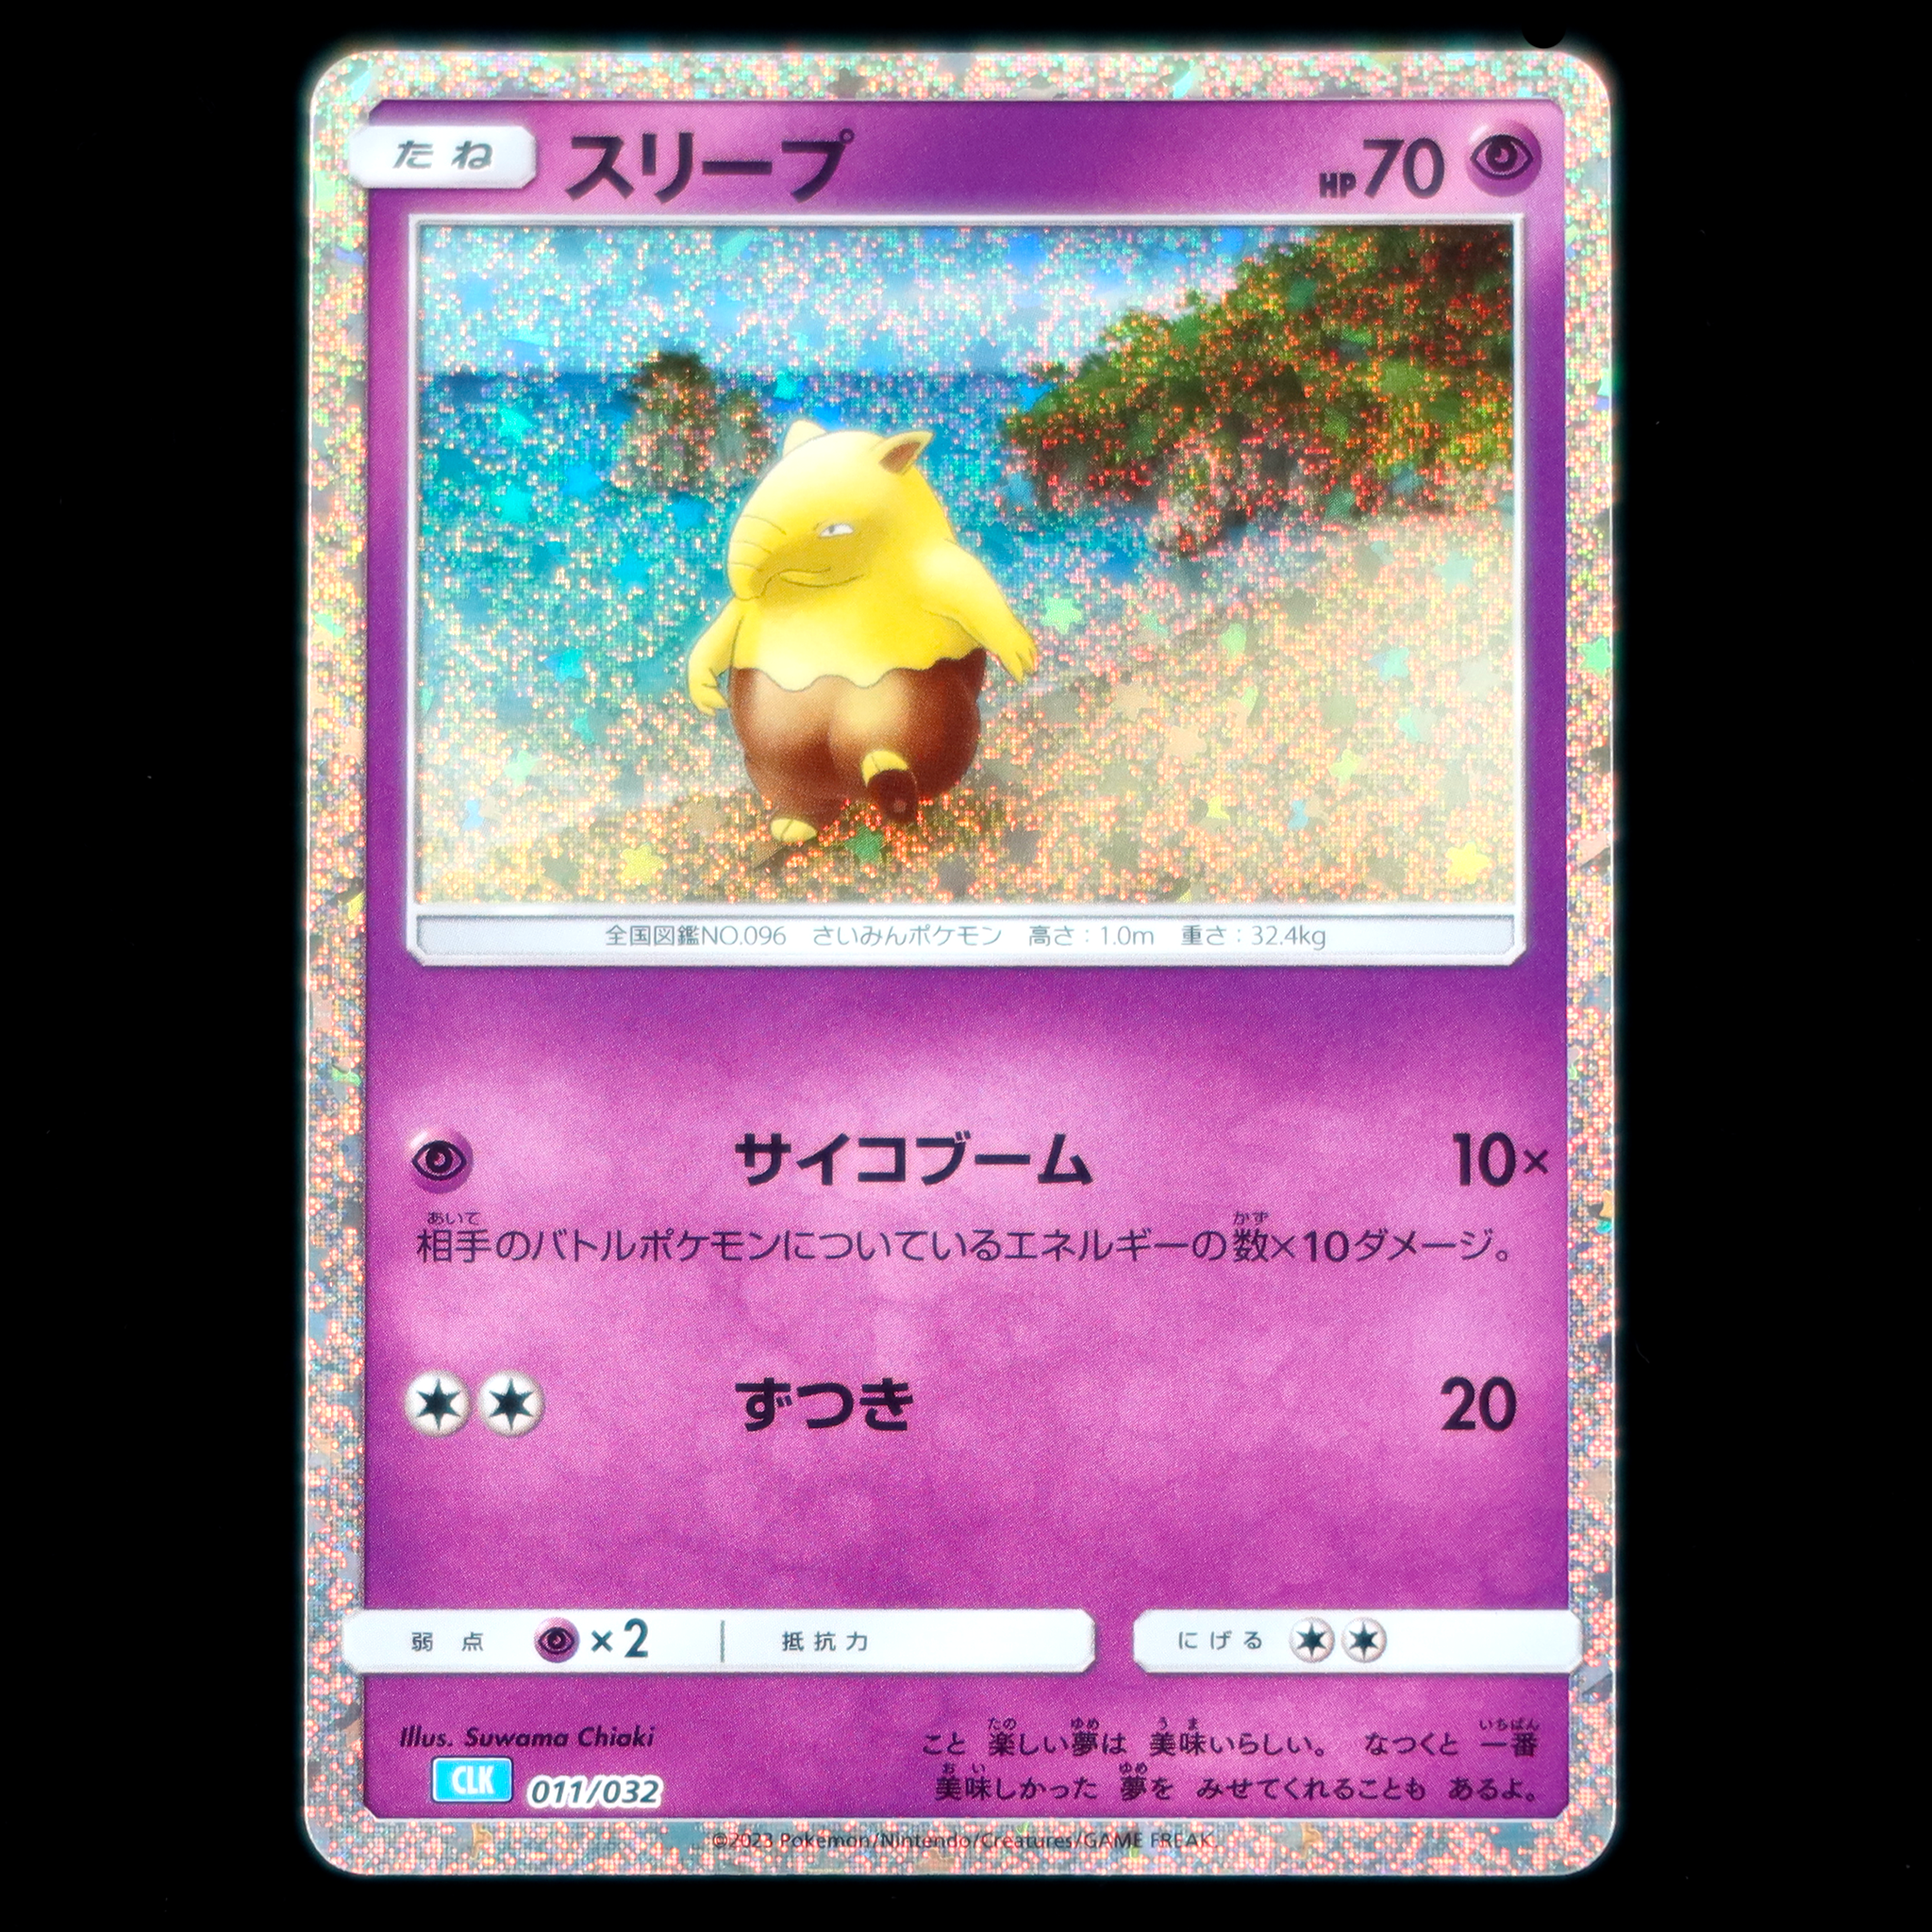 Pokémon Card Game Scarlet & Violet ｢Pokémon Card Game Classic｣  Pokémon Card Game CLK 011/032  Drowzee